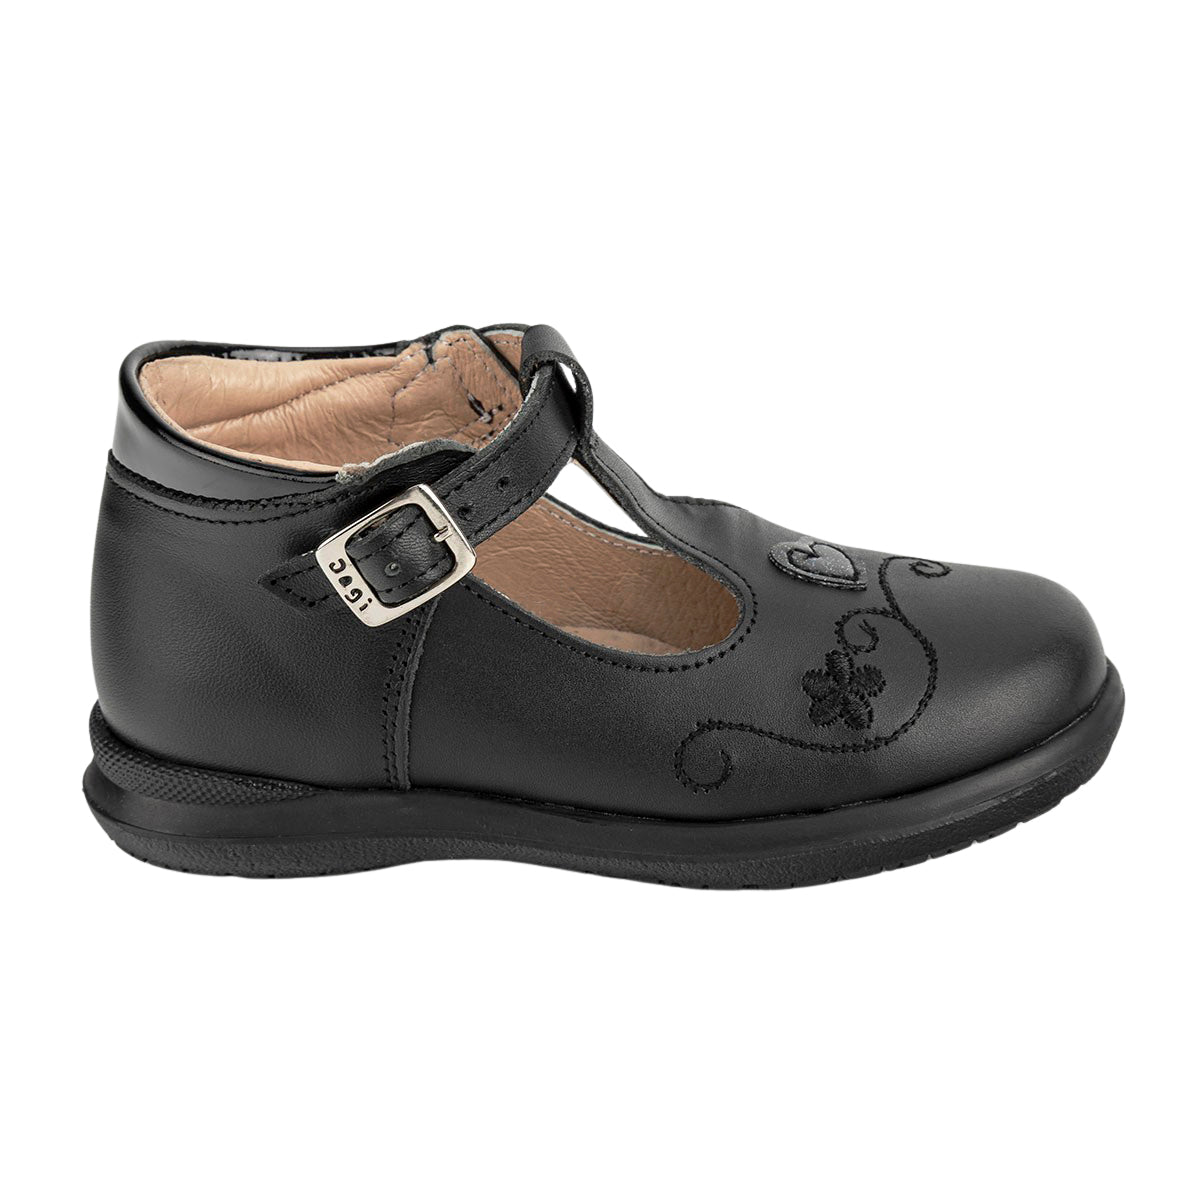 Zapato Clásico Negro Niña Dogi 05509